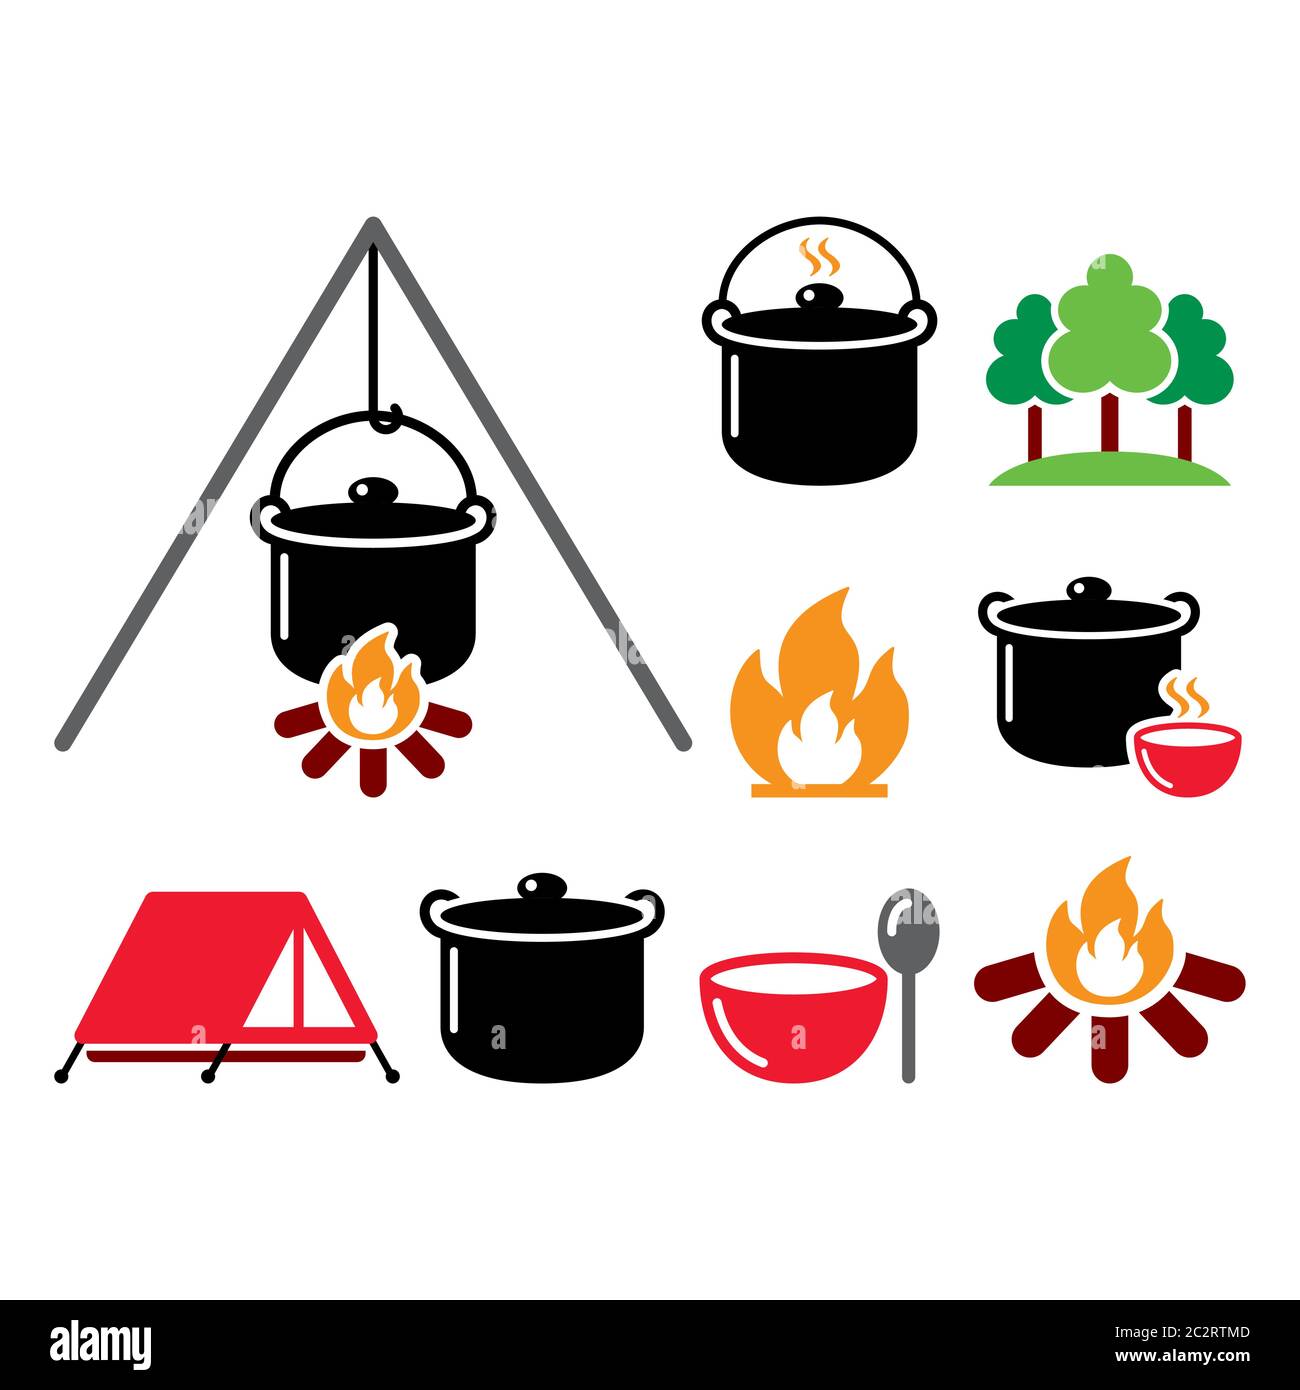 Kochen über einem Feuer, Lagerfeuer Kochen, Wanderung Vektor Farbe Icons Set - Essen, Prothese, Reise-Idee Stock Vektor